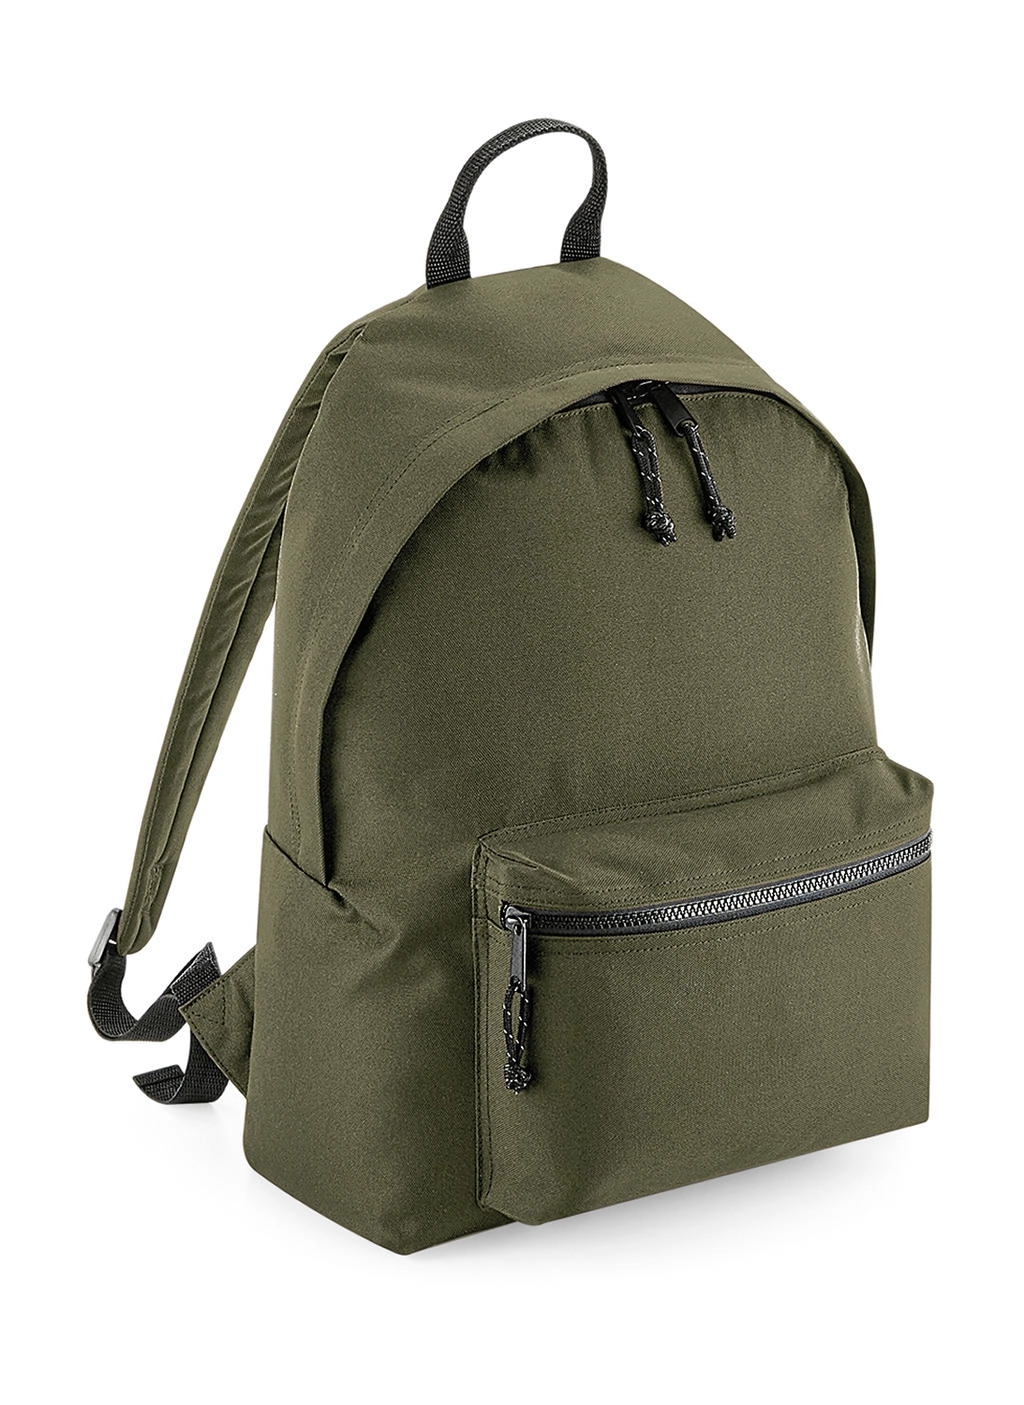 Recycled Backpack zum Besticken und Bedrucken in der Farbe Military Green mit Ihren Logo, Schriftzug oder Motiv.